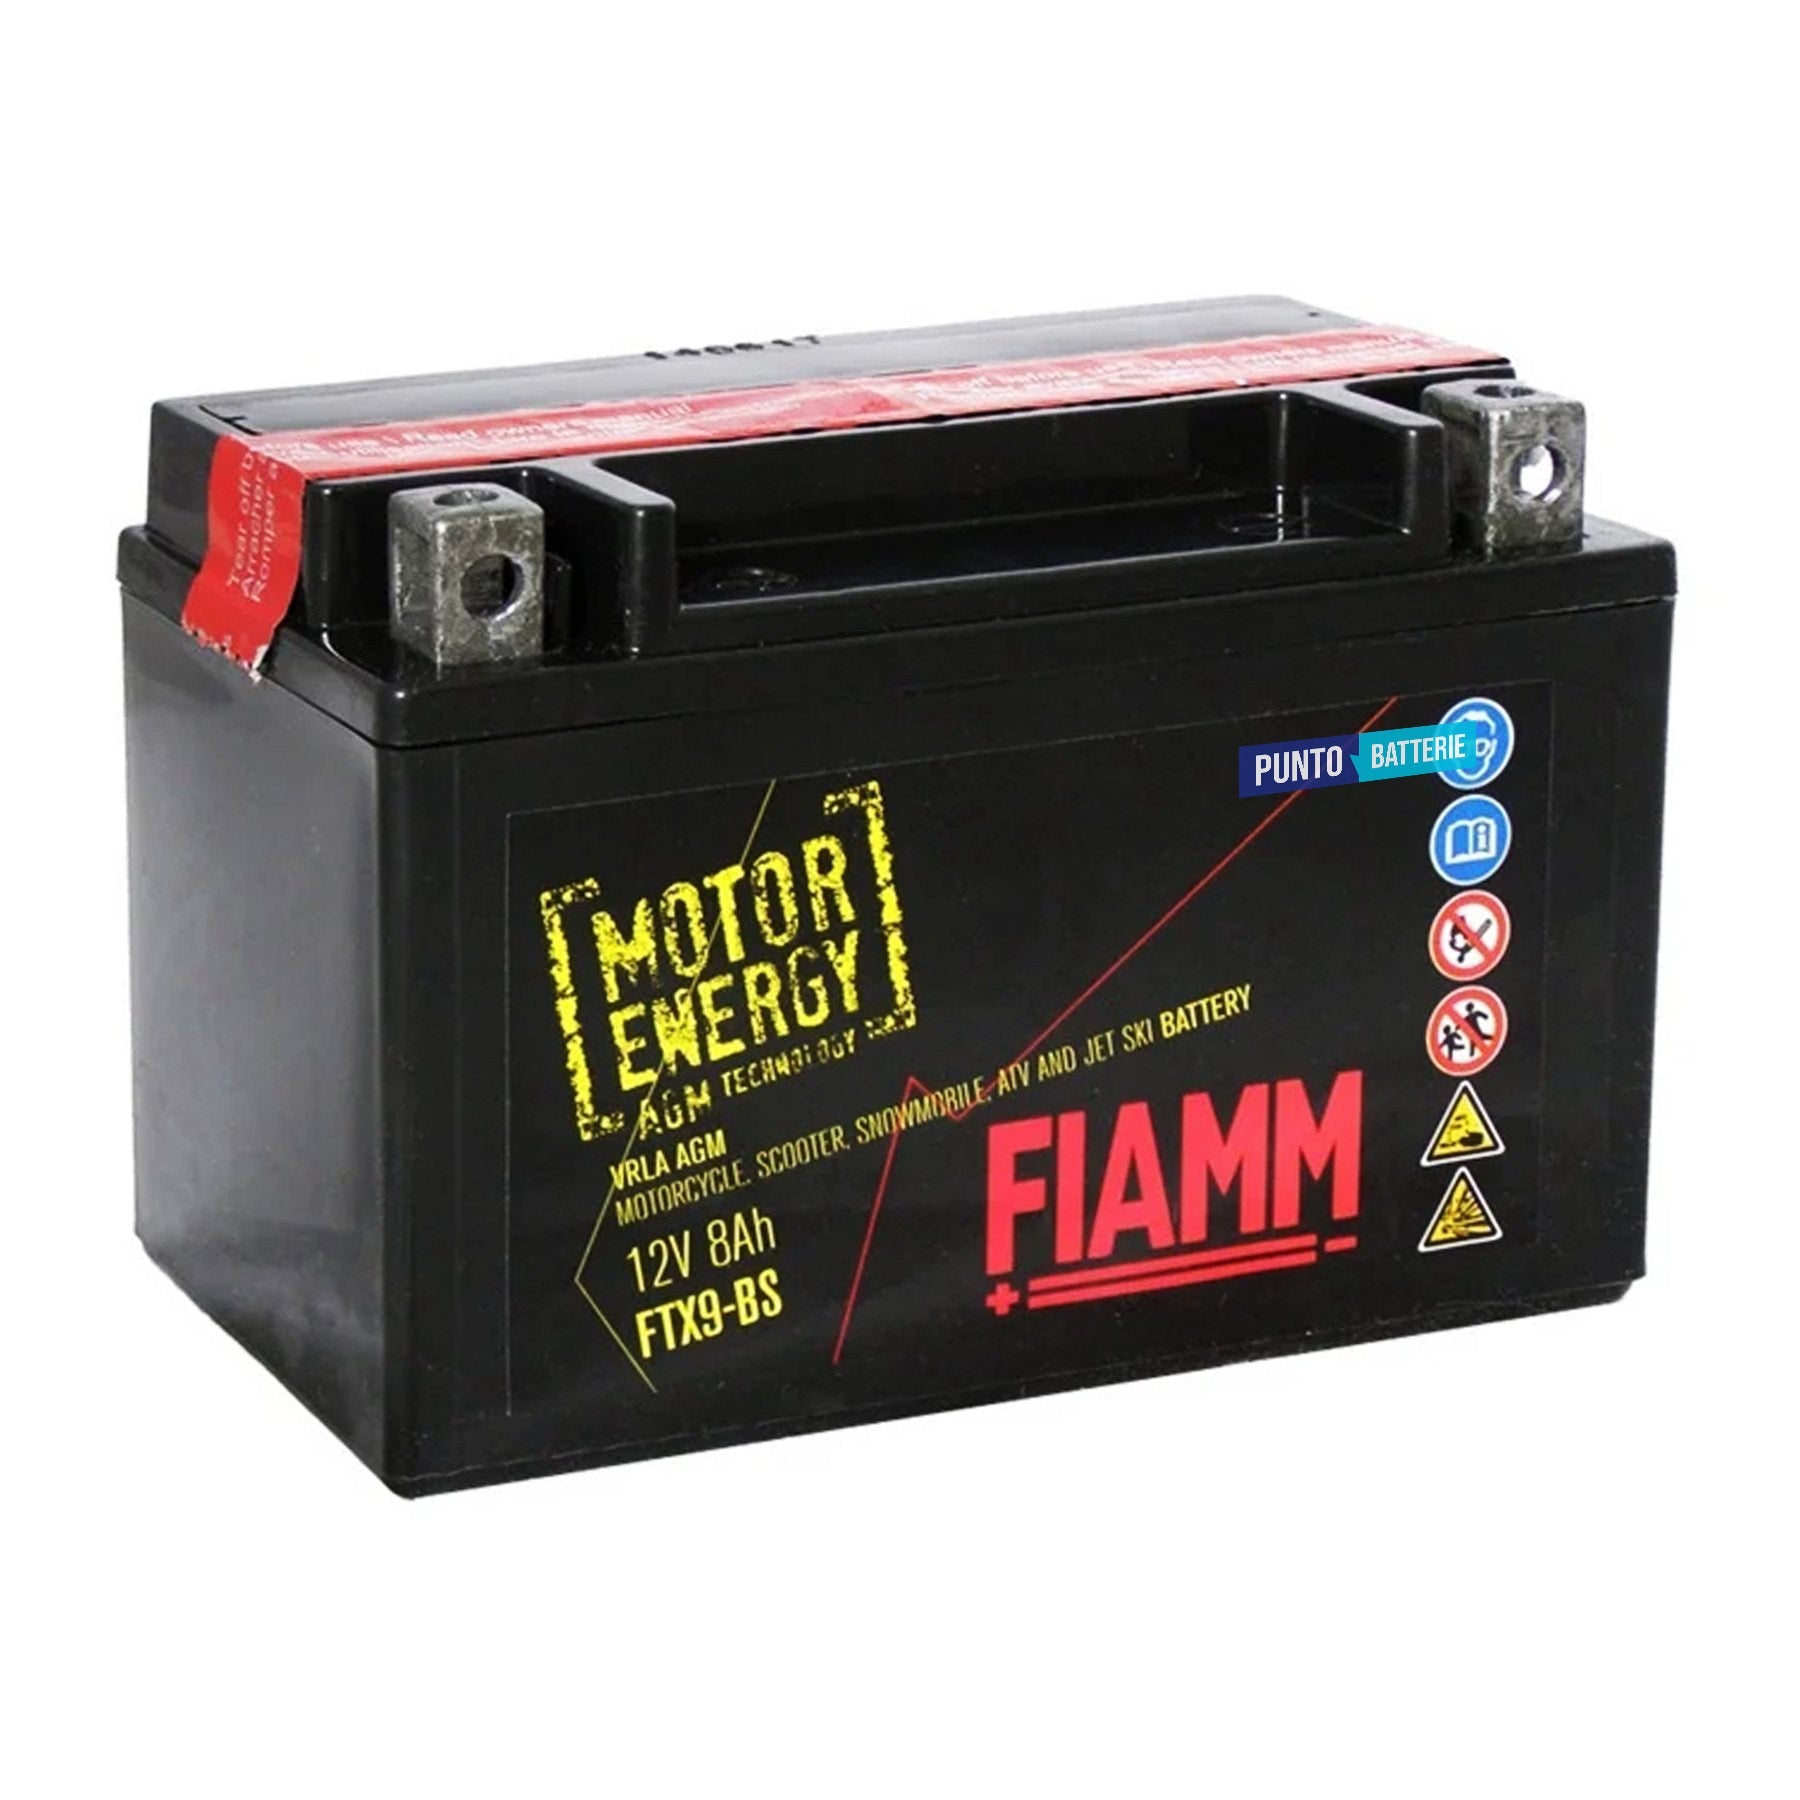 Batteria originale Fiamm Motor Energy AGM FTX9-BS, dimensioni 150 x 87 x 105, polo positivo a sinistra, 12 volt, 8 amperora, 110 ampere. Batteria per moto, scooter e powersport.